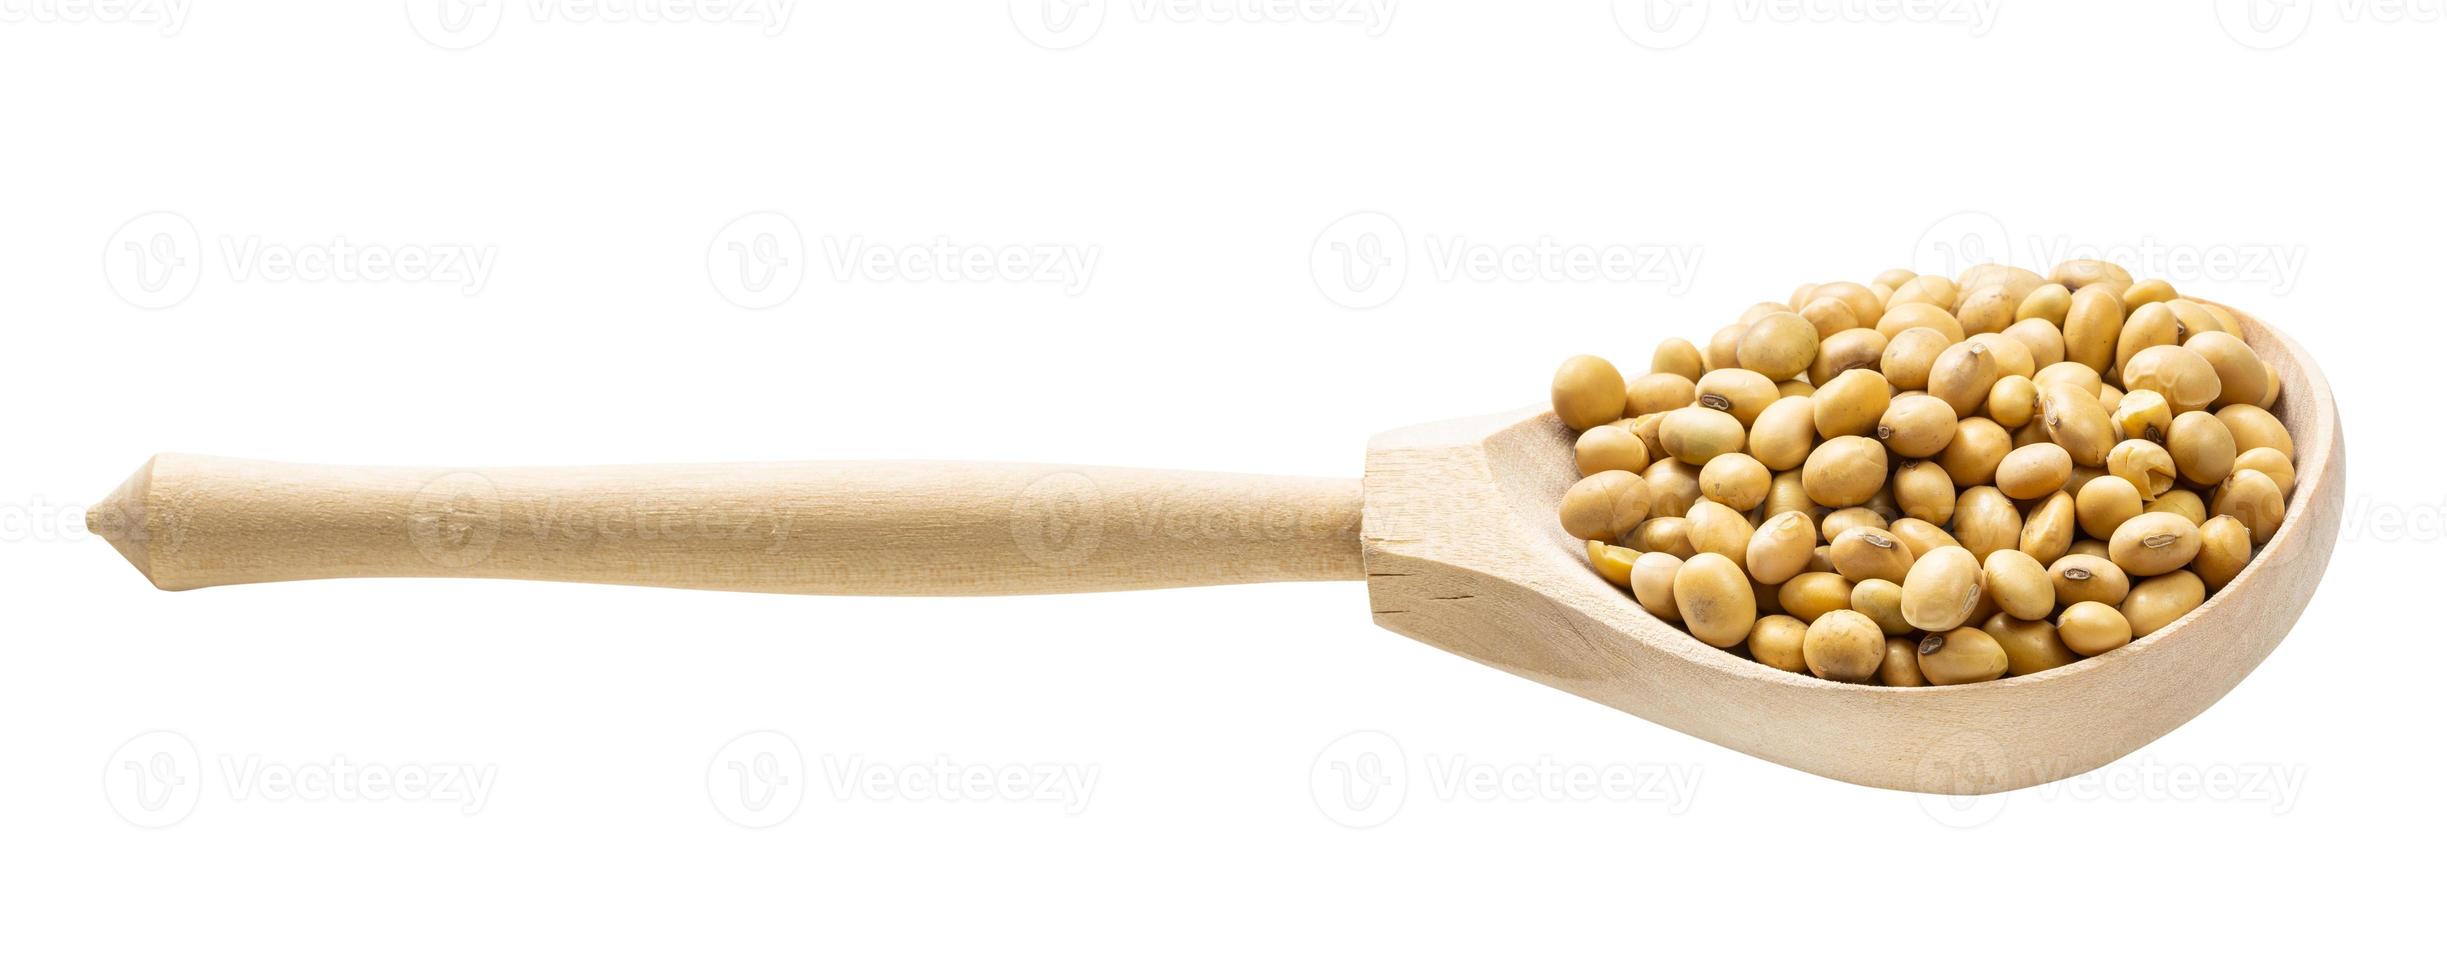 cuillère en bois avec des graines de soja séchées crues isolées photo